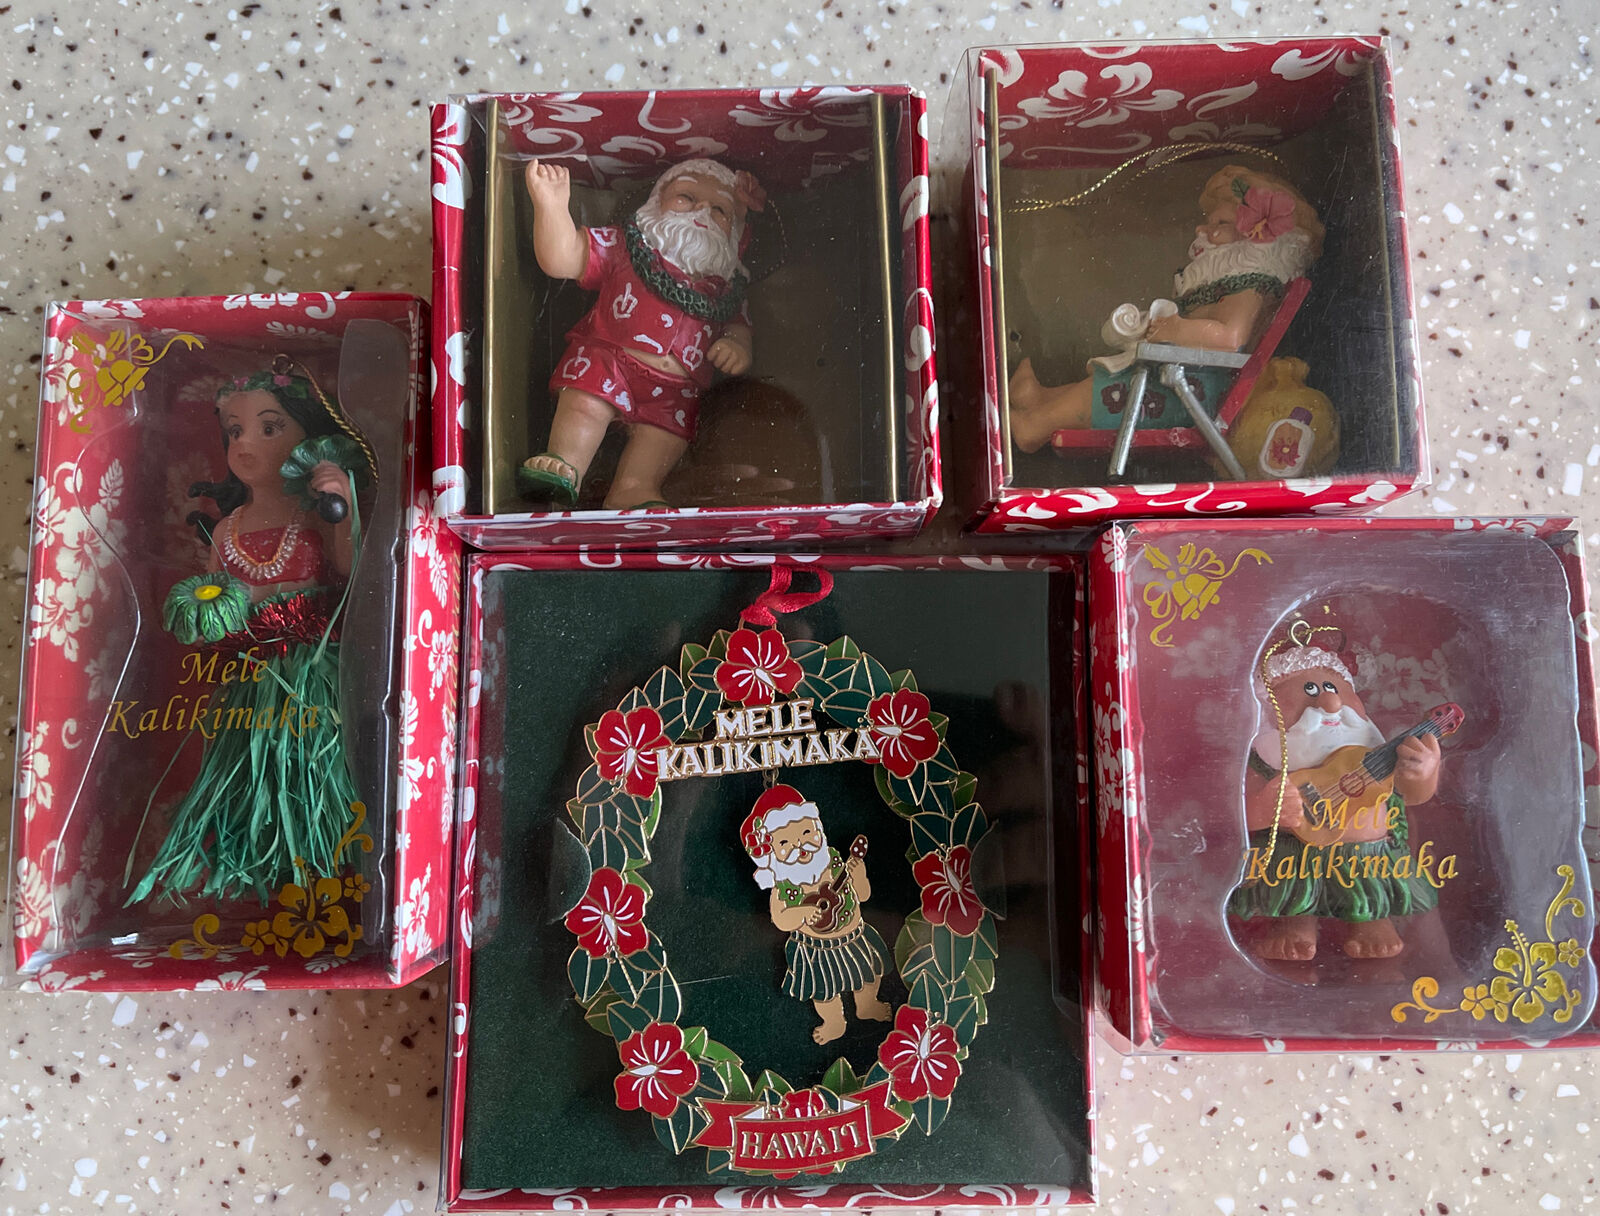 Mele Kalikimaka set of ornaments